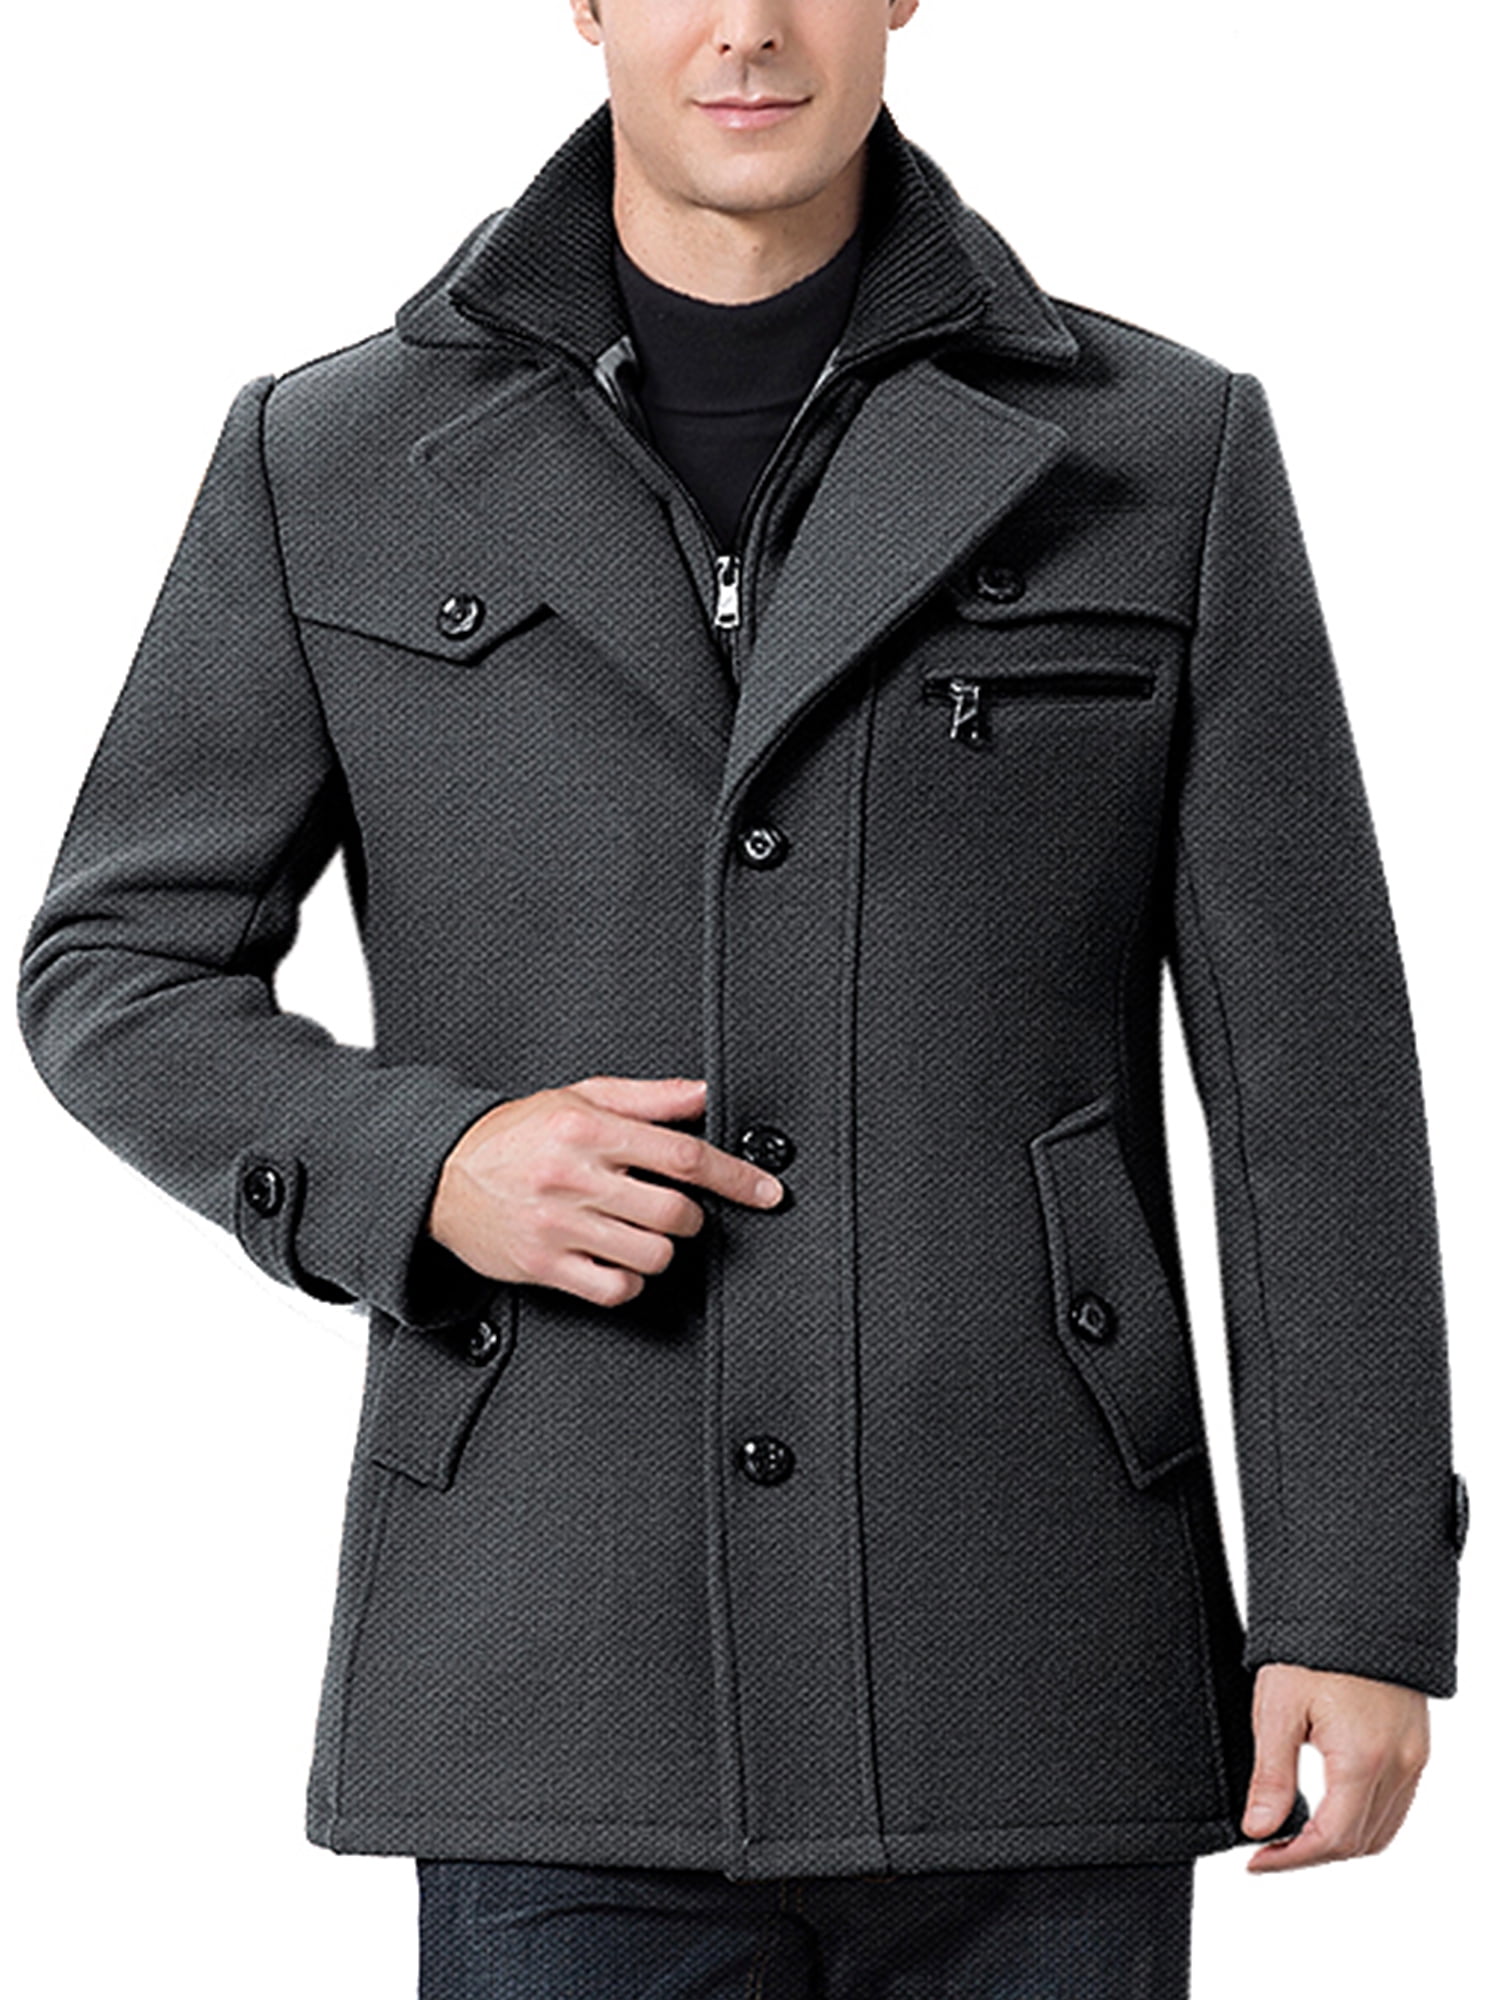 MAWCLOS Mens Boys Big & Tall Winter Warm Coat Overcoat Pea Coat Classic ...